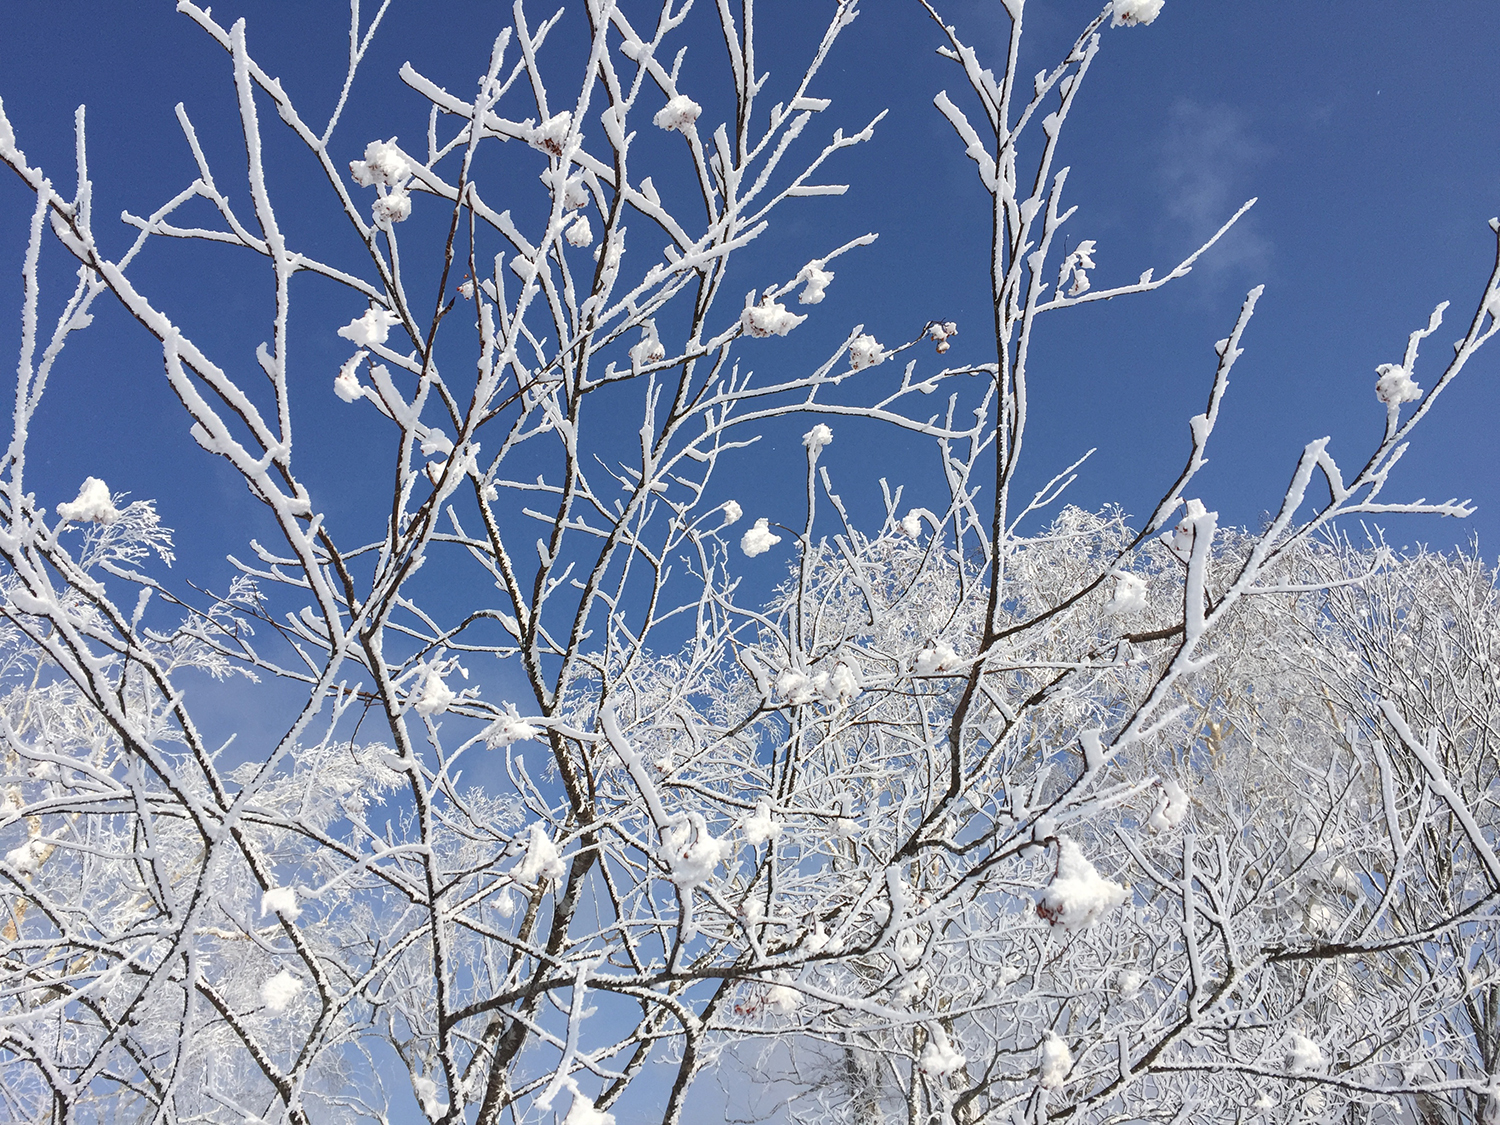 奇跡のような青空と降り積もった軽い雪。心に刻まれた風景